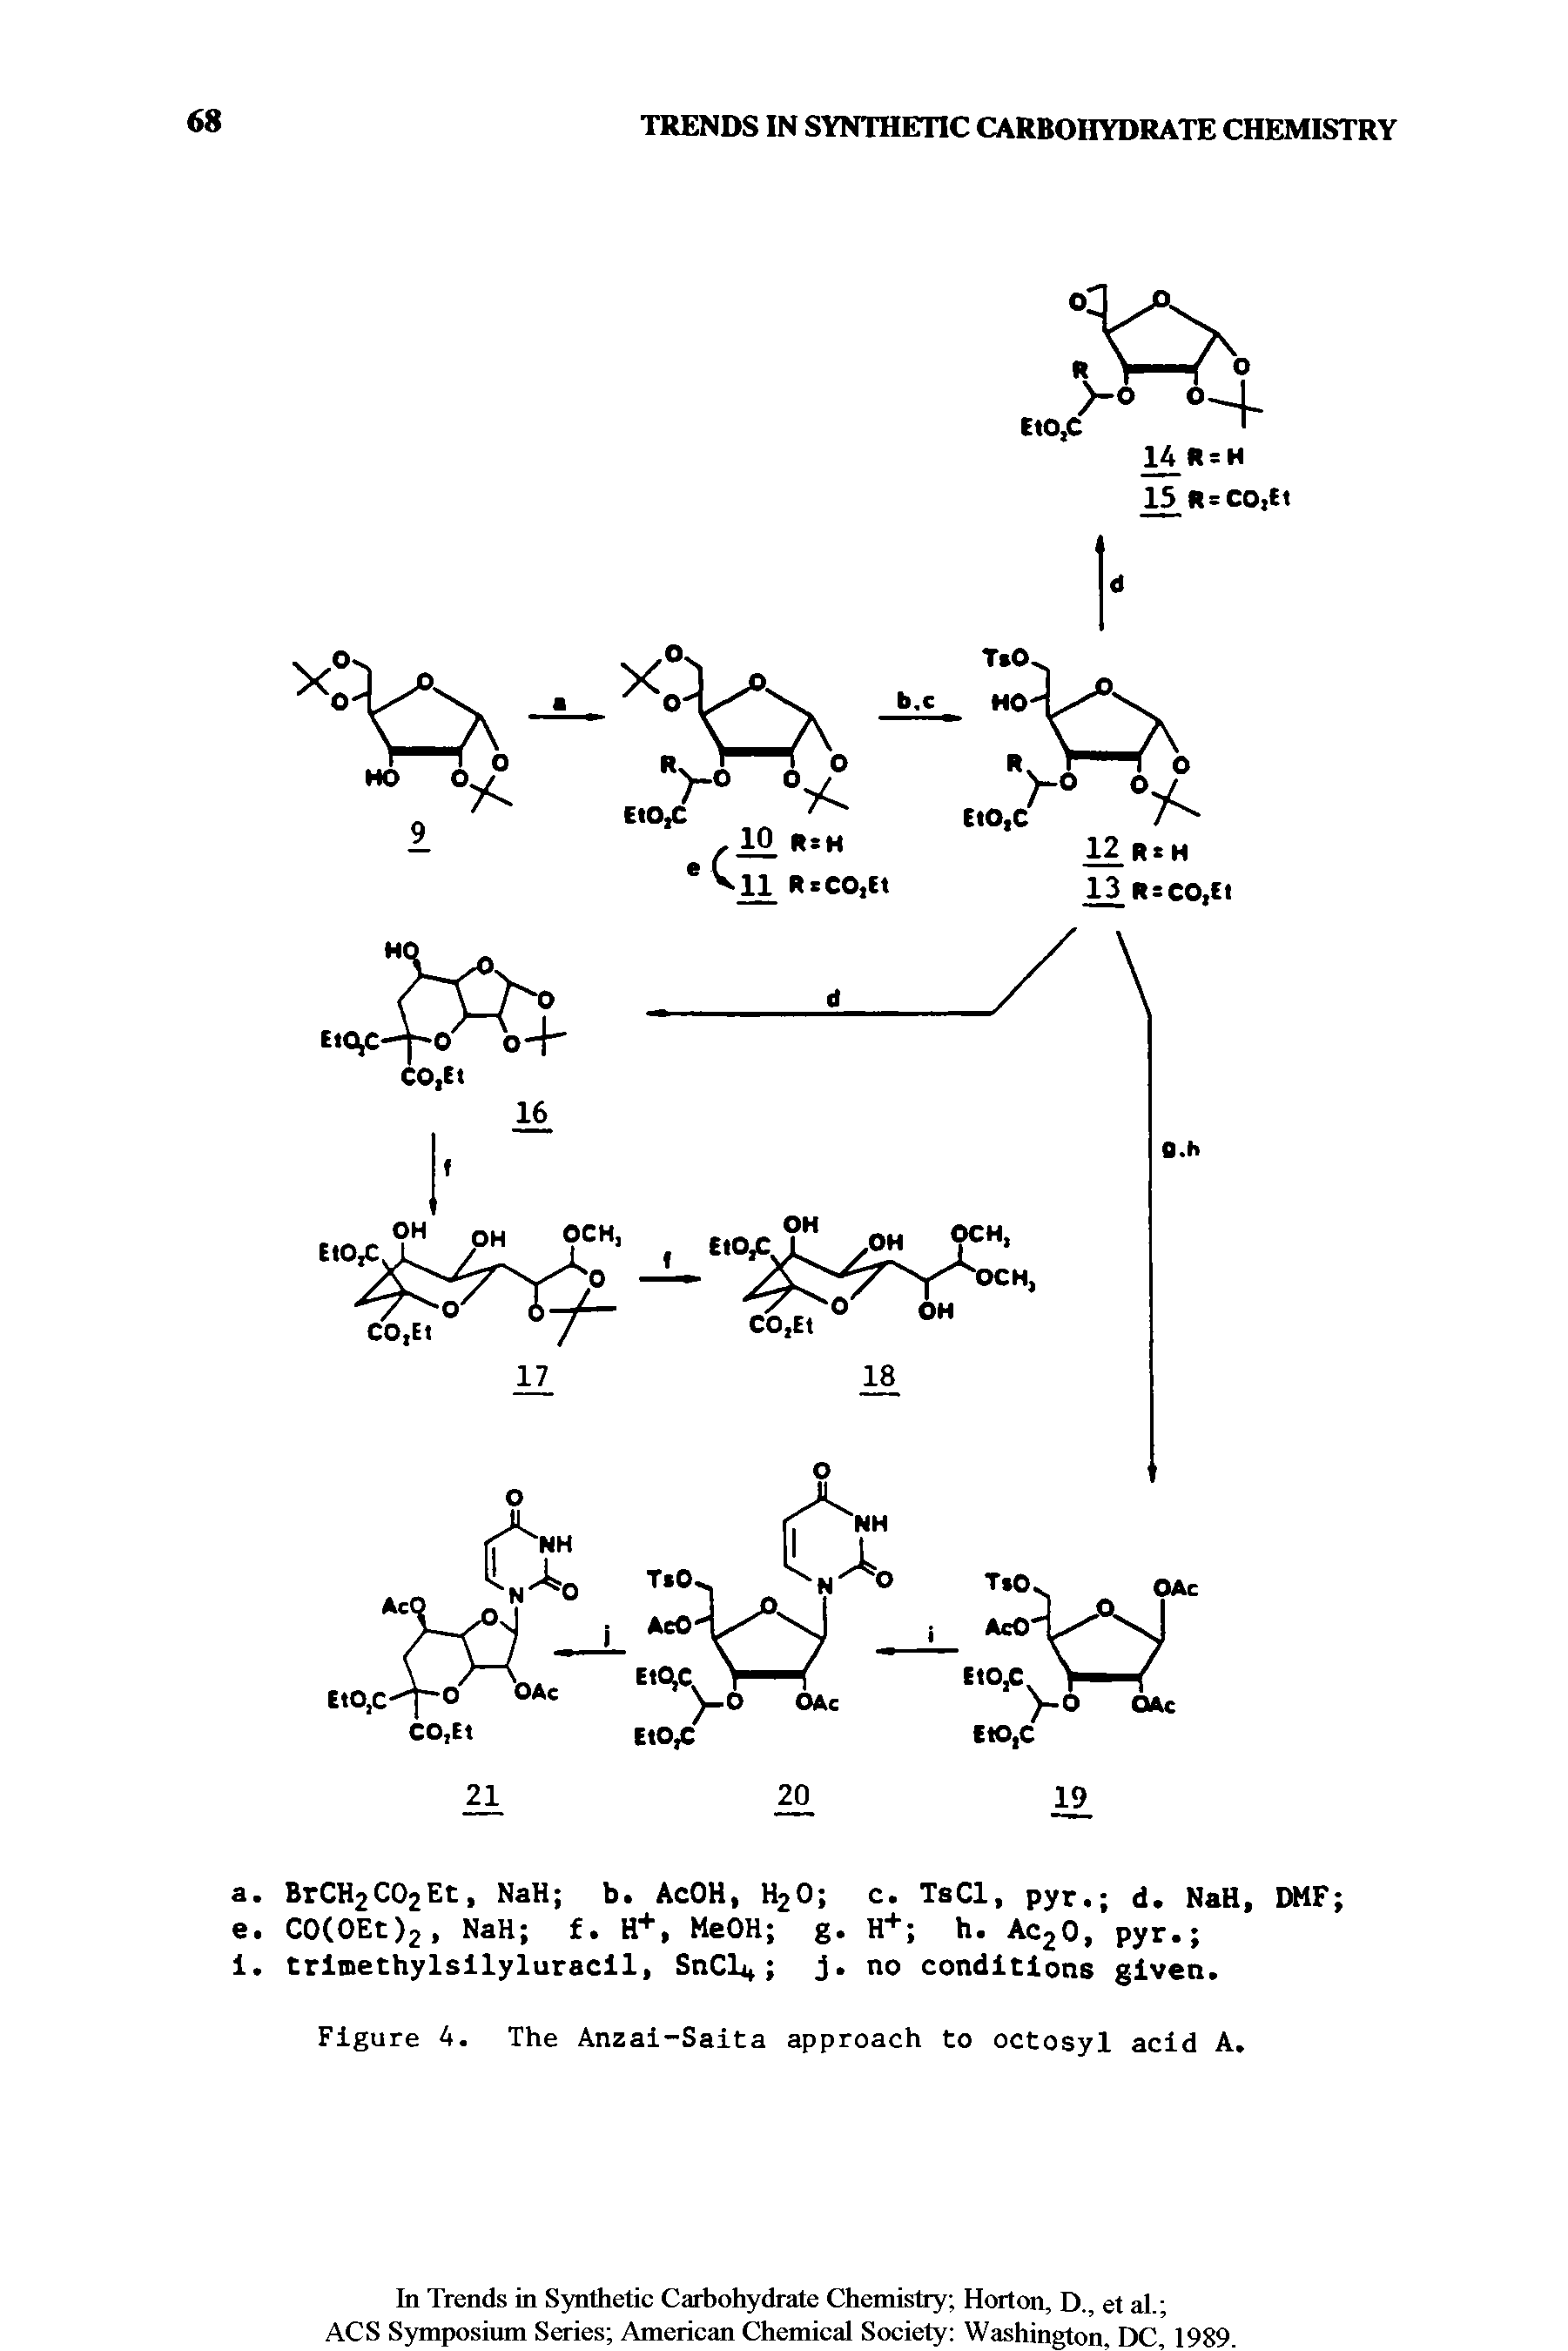 Figure A. The Anzai-Saita approach to octosyl acid A.